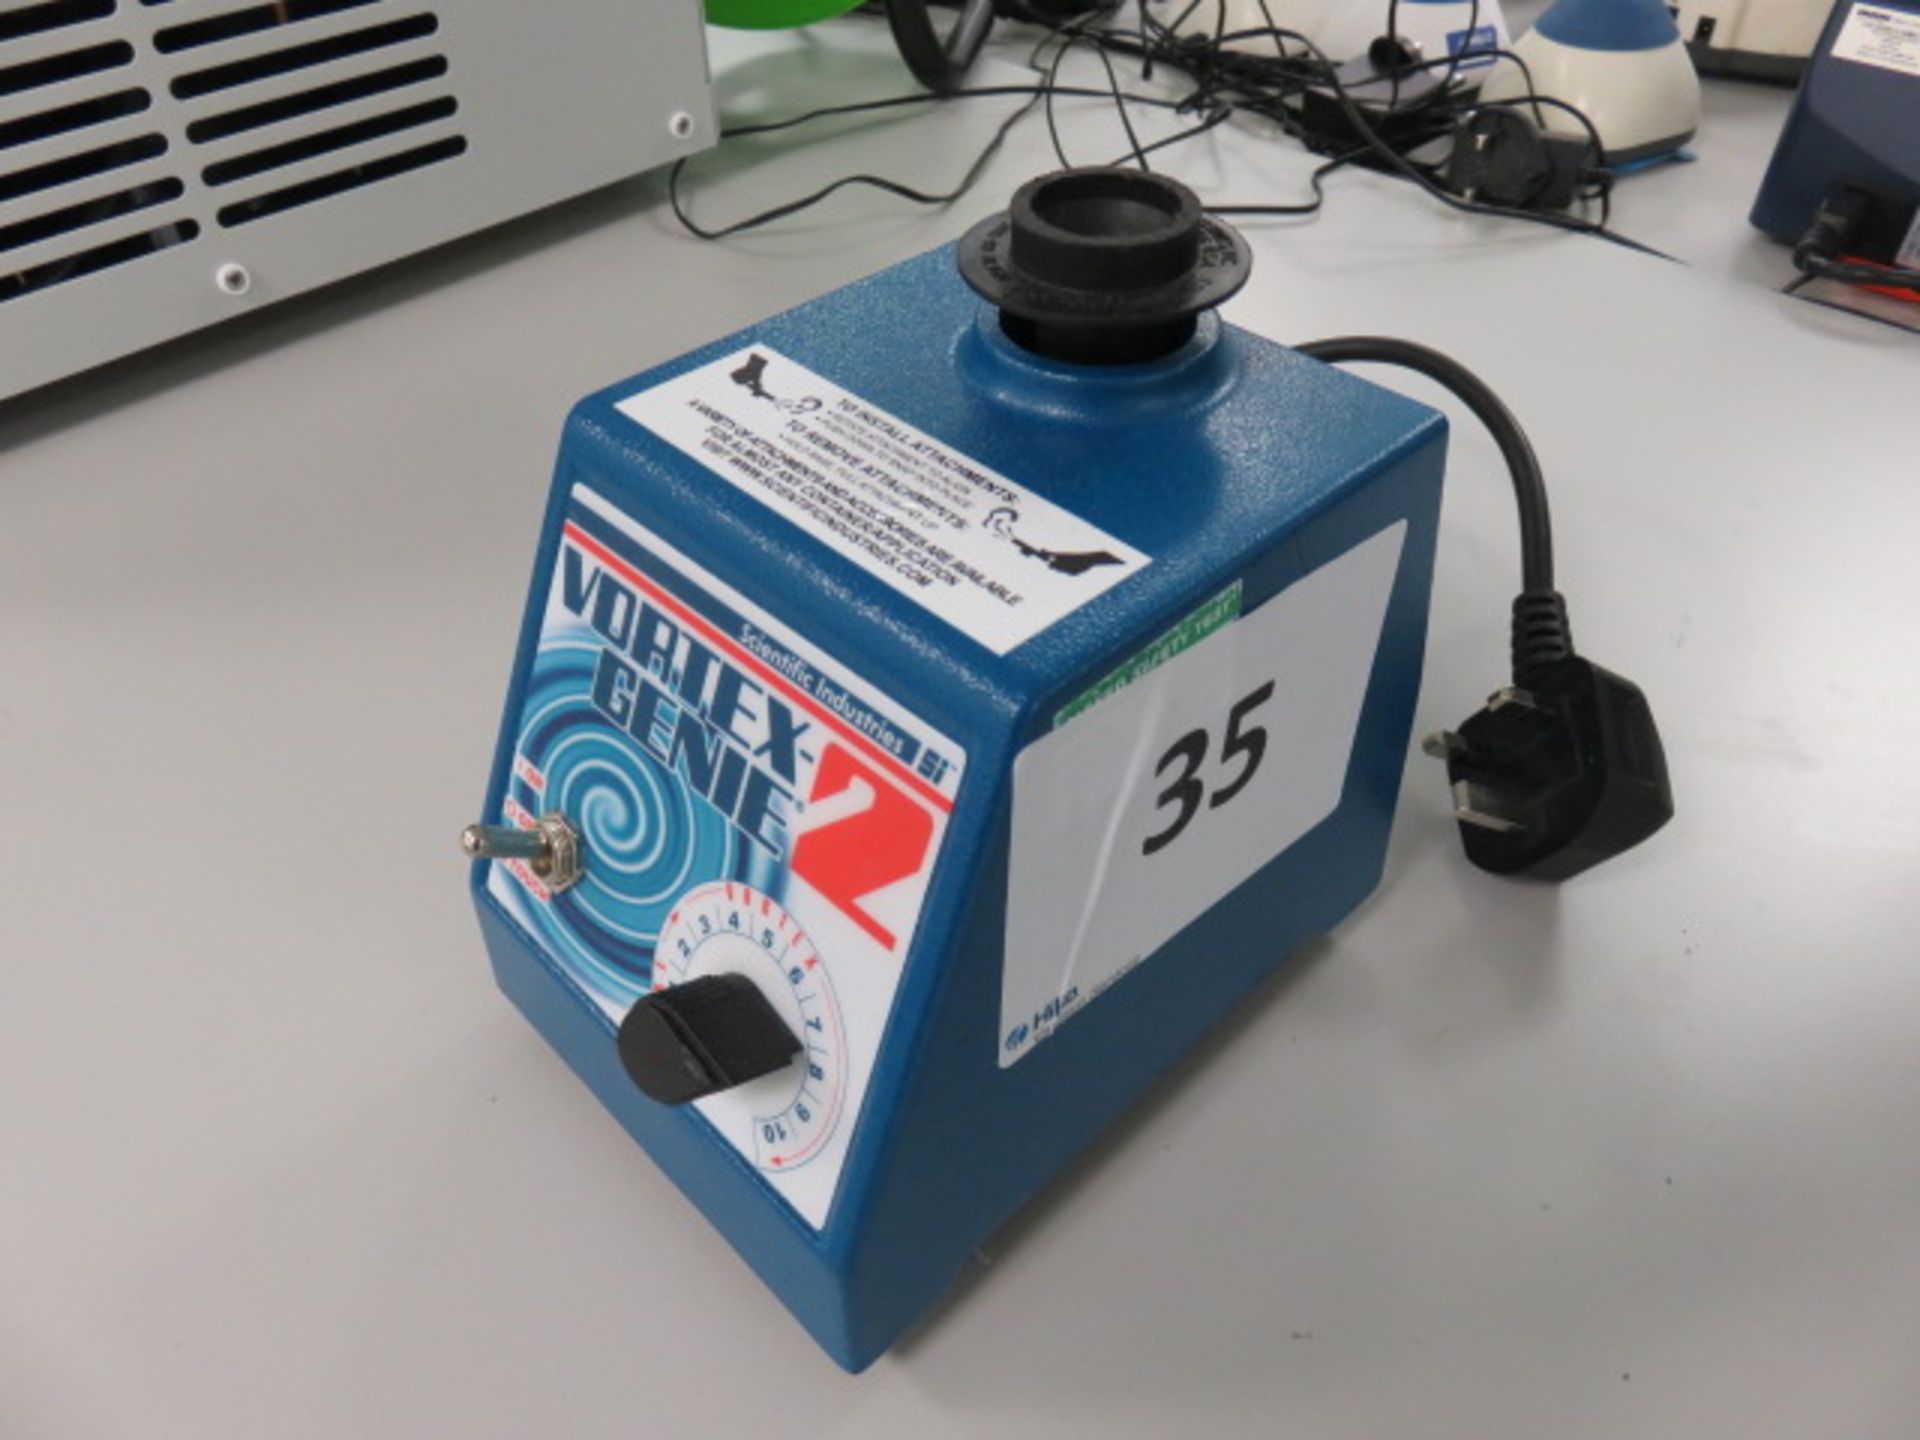 Scientific Industries Genie 2 Vortex Mixer. Serial No. ZE6-250383